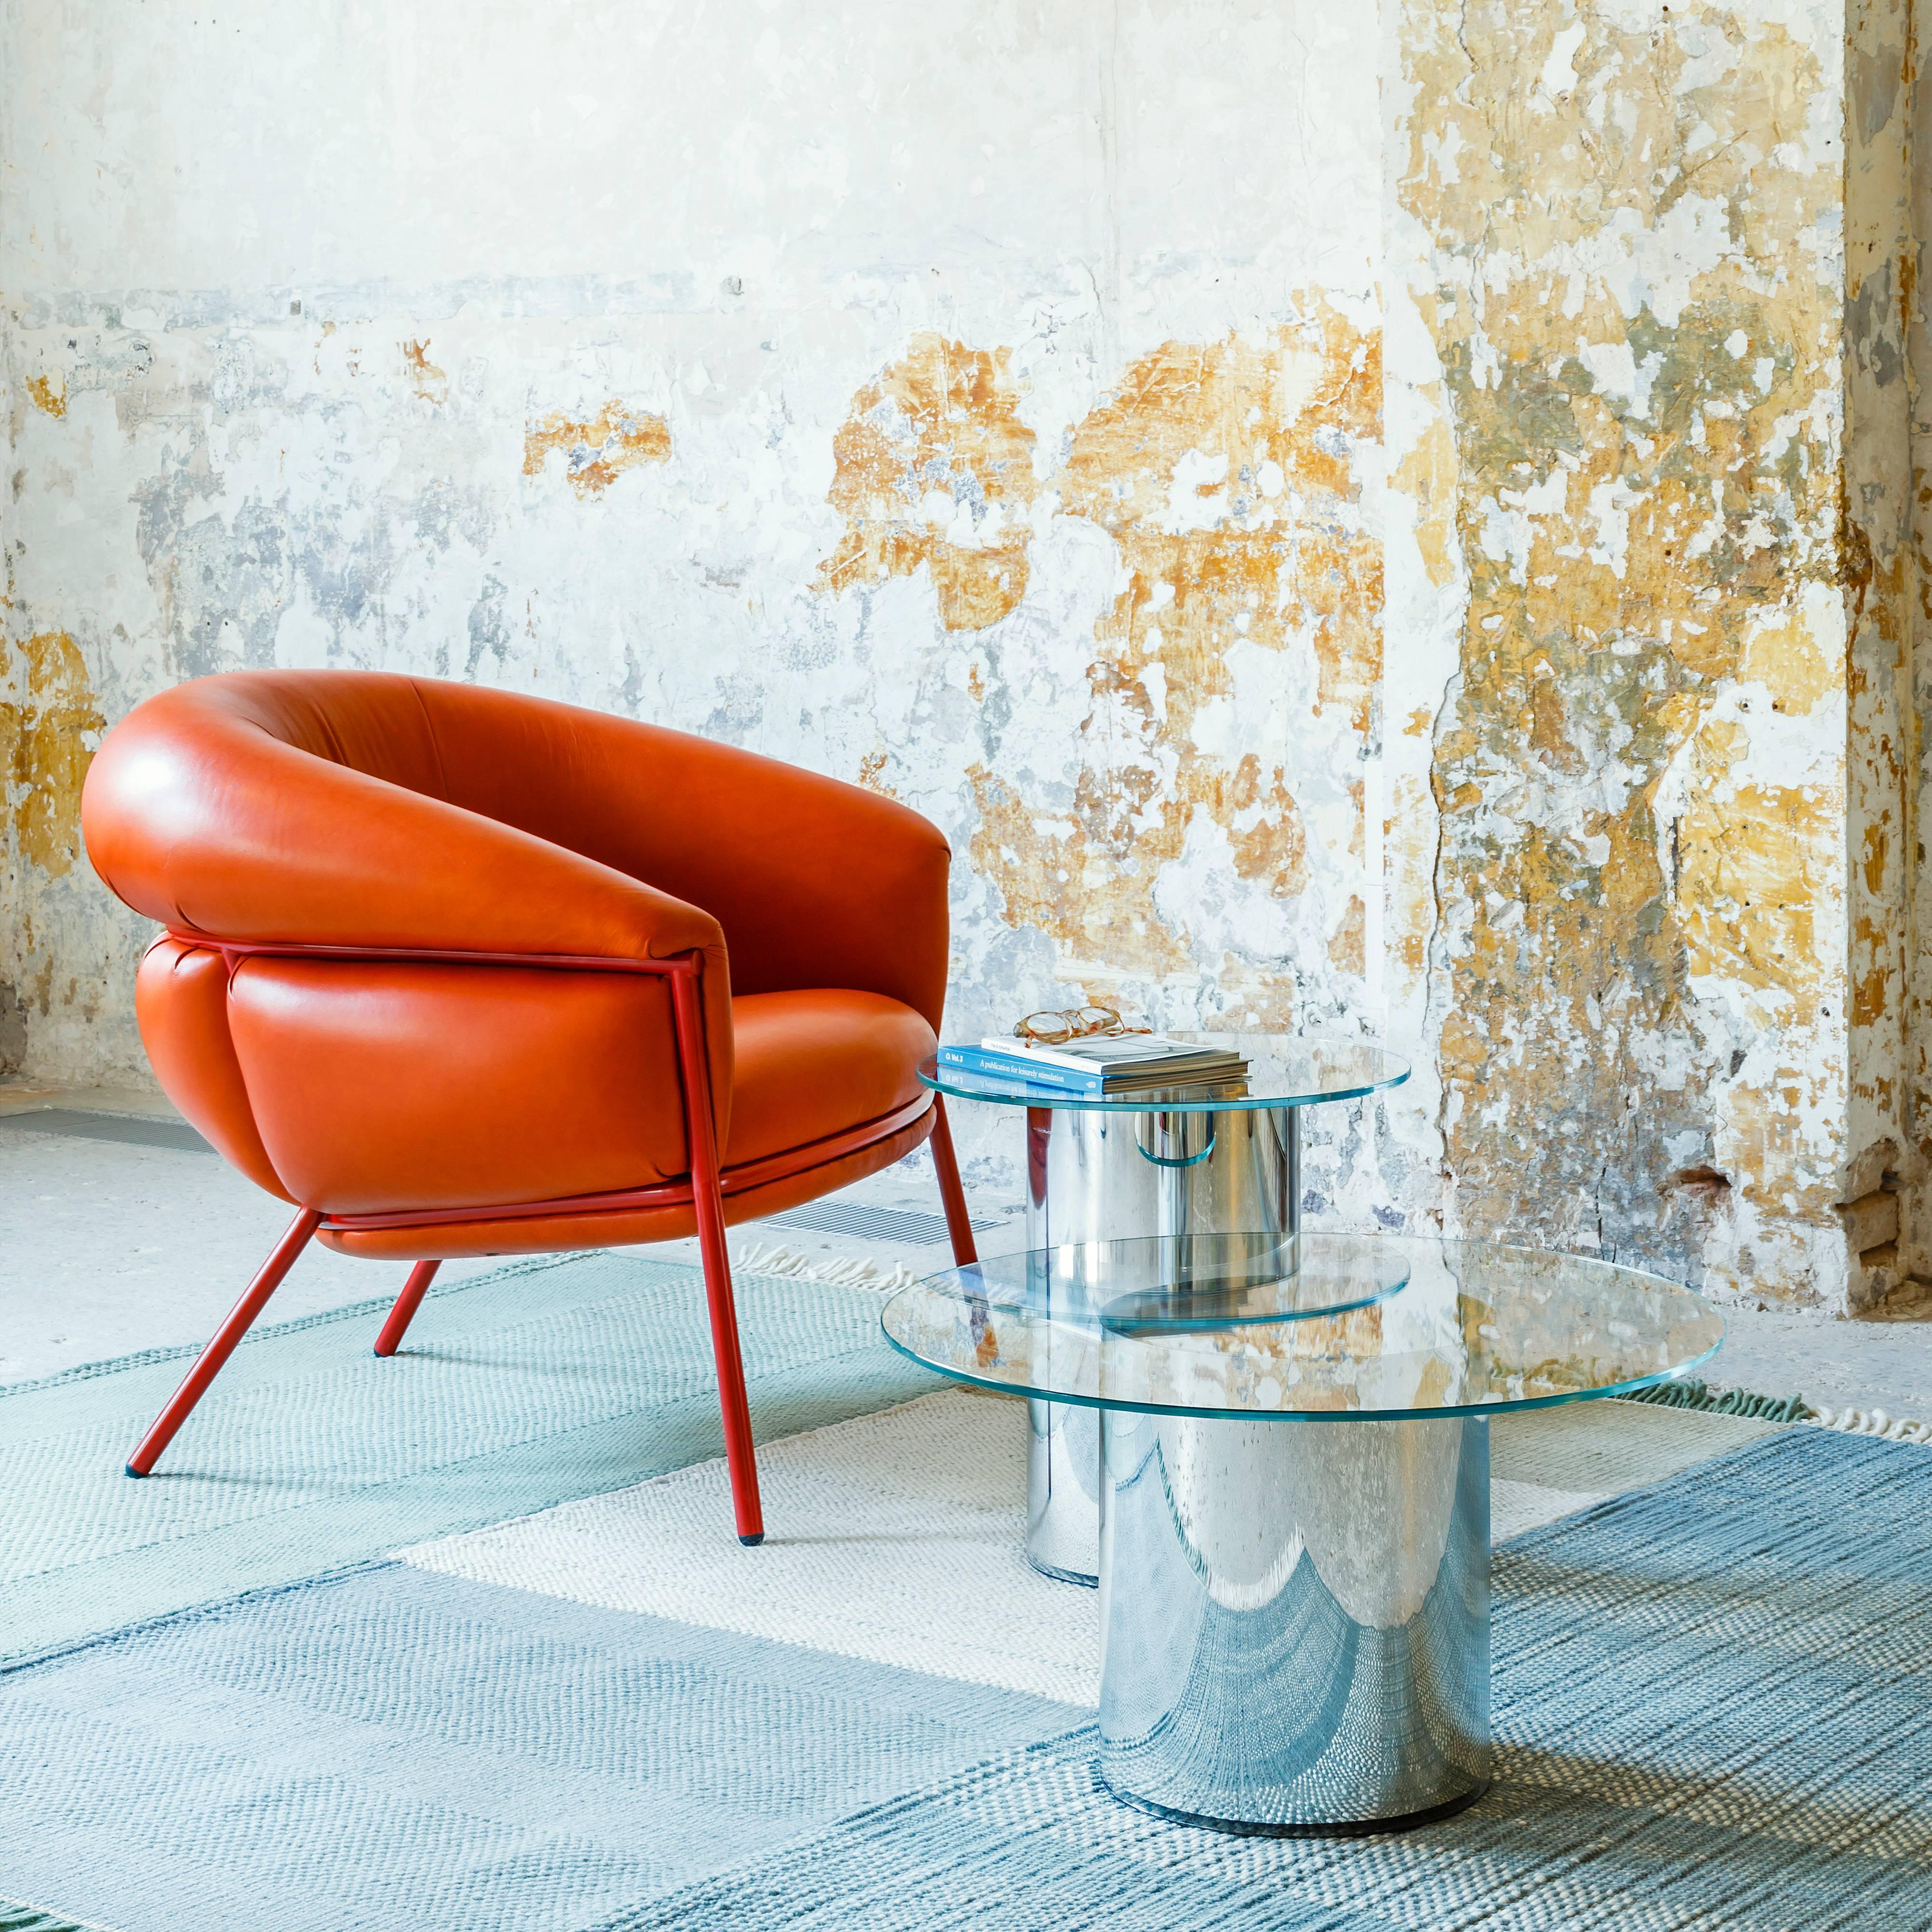 Grasso Armchair by Stephen Burks, Orange 1